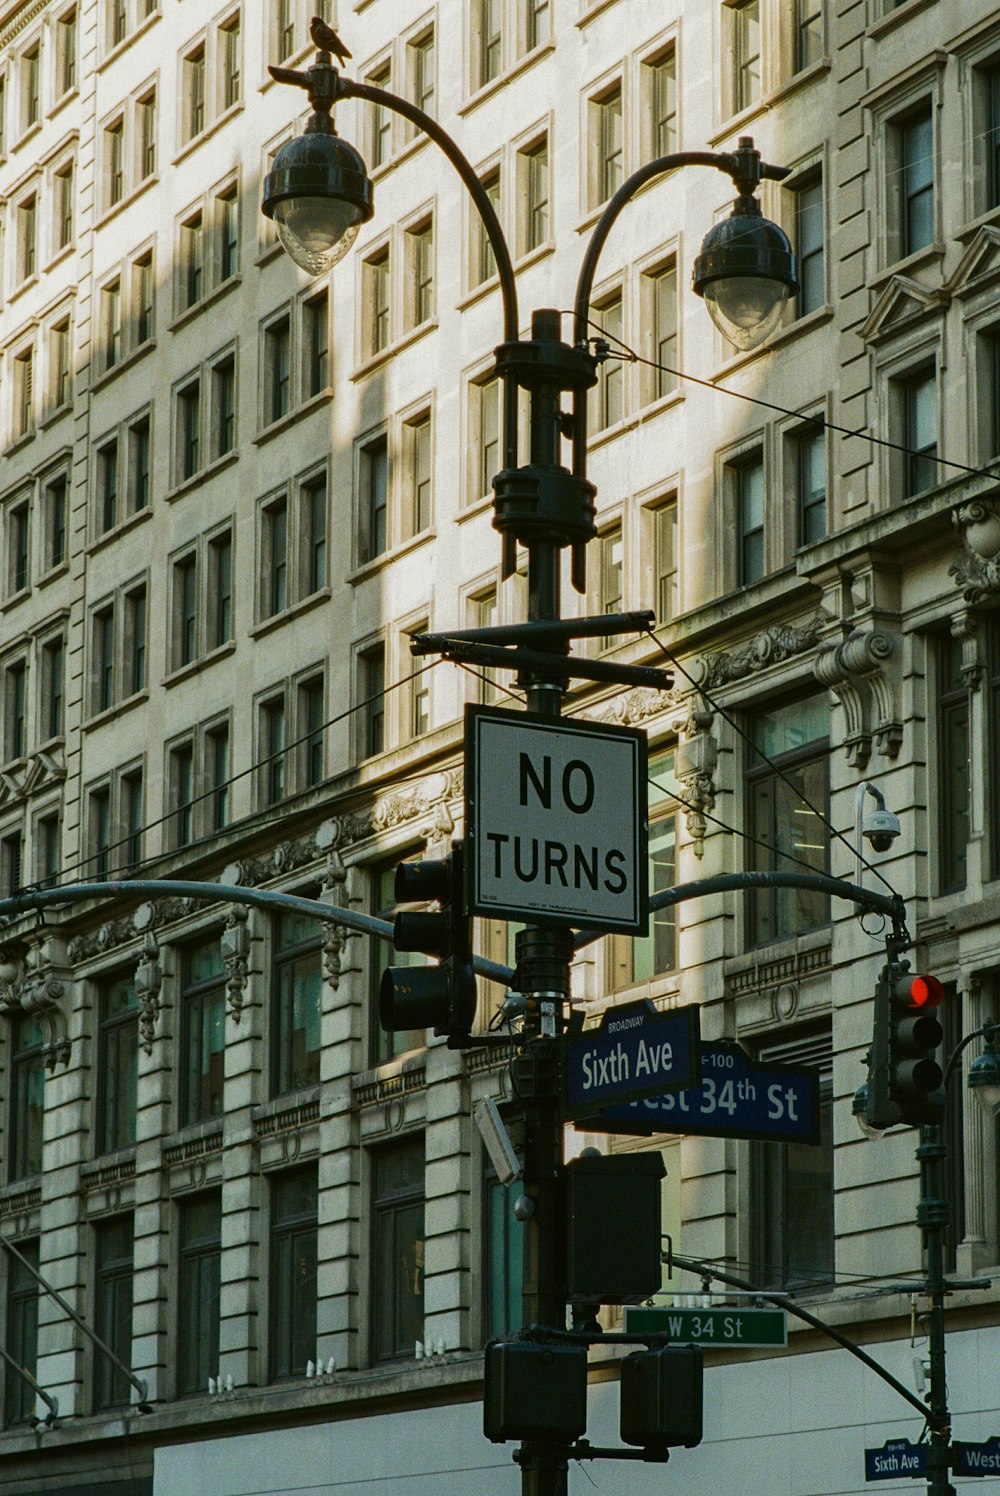 a street sign on a pole